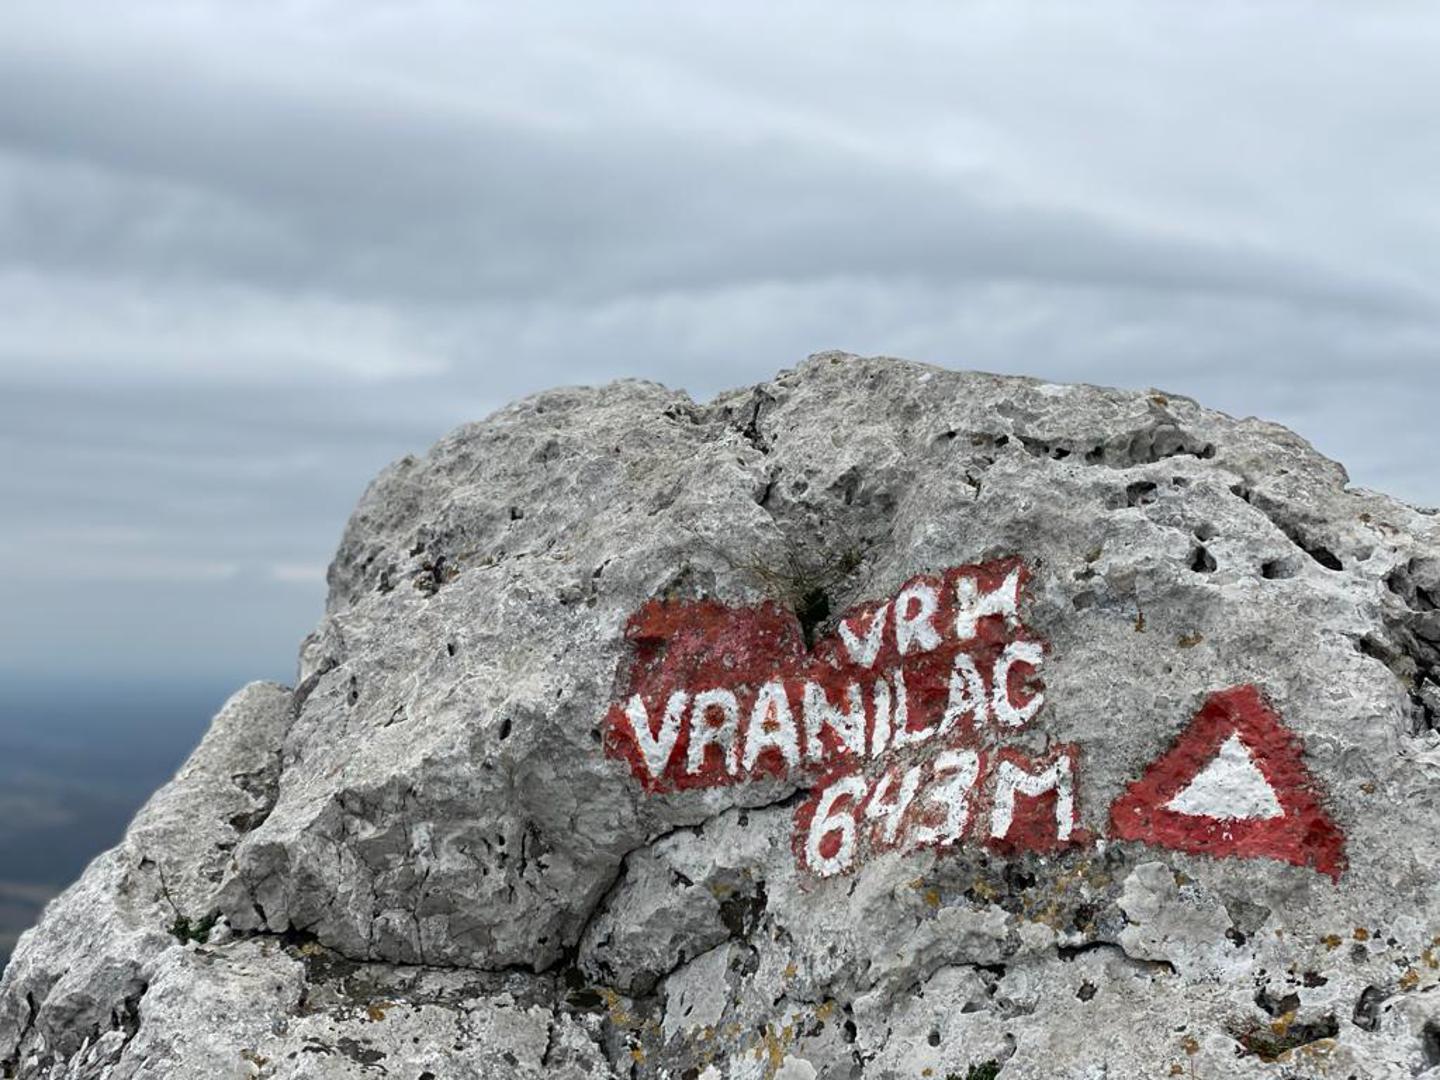 Najviši je vrh Vranilac, na 643 metra nadmorske visine